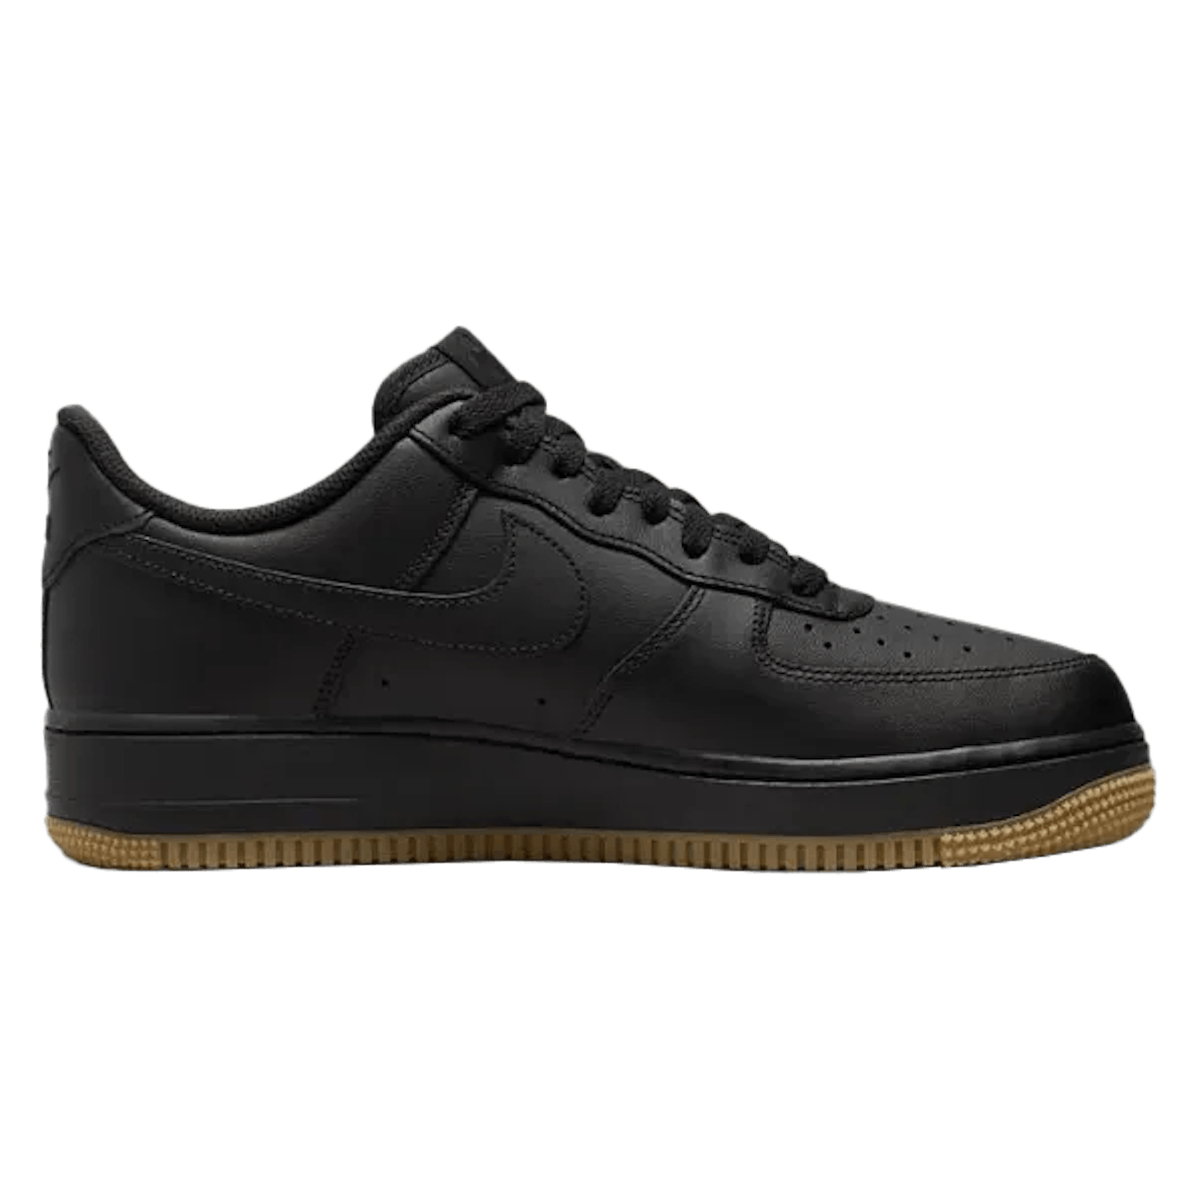 Nike Air Force 1 Low "Black Gum"